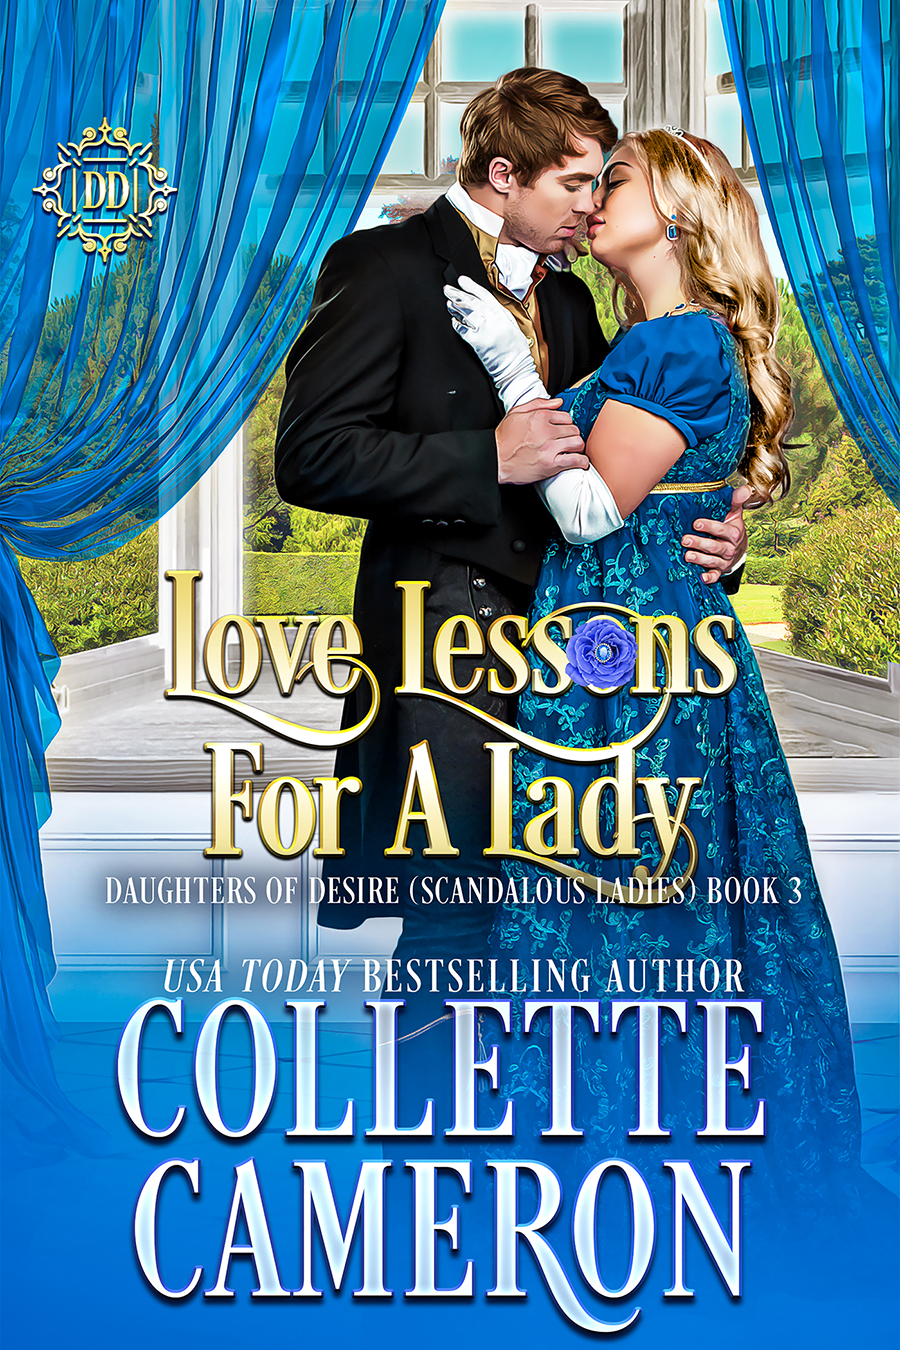 Collette's Historical Romances 20